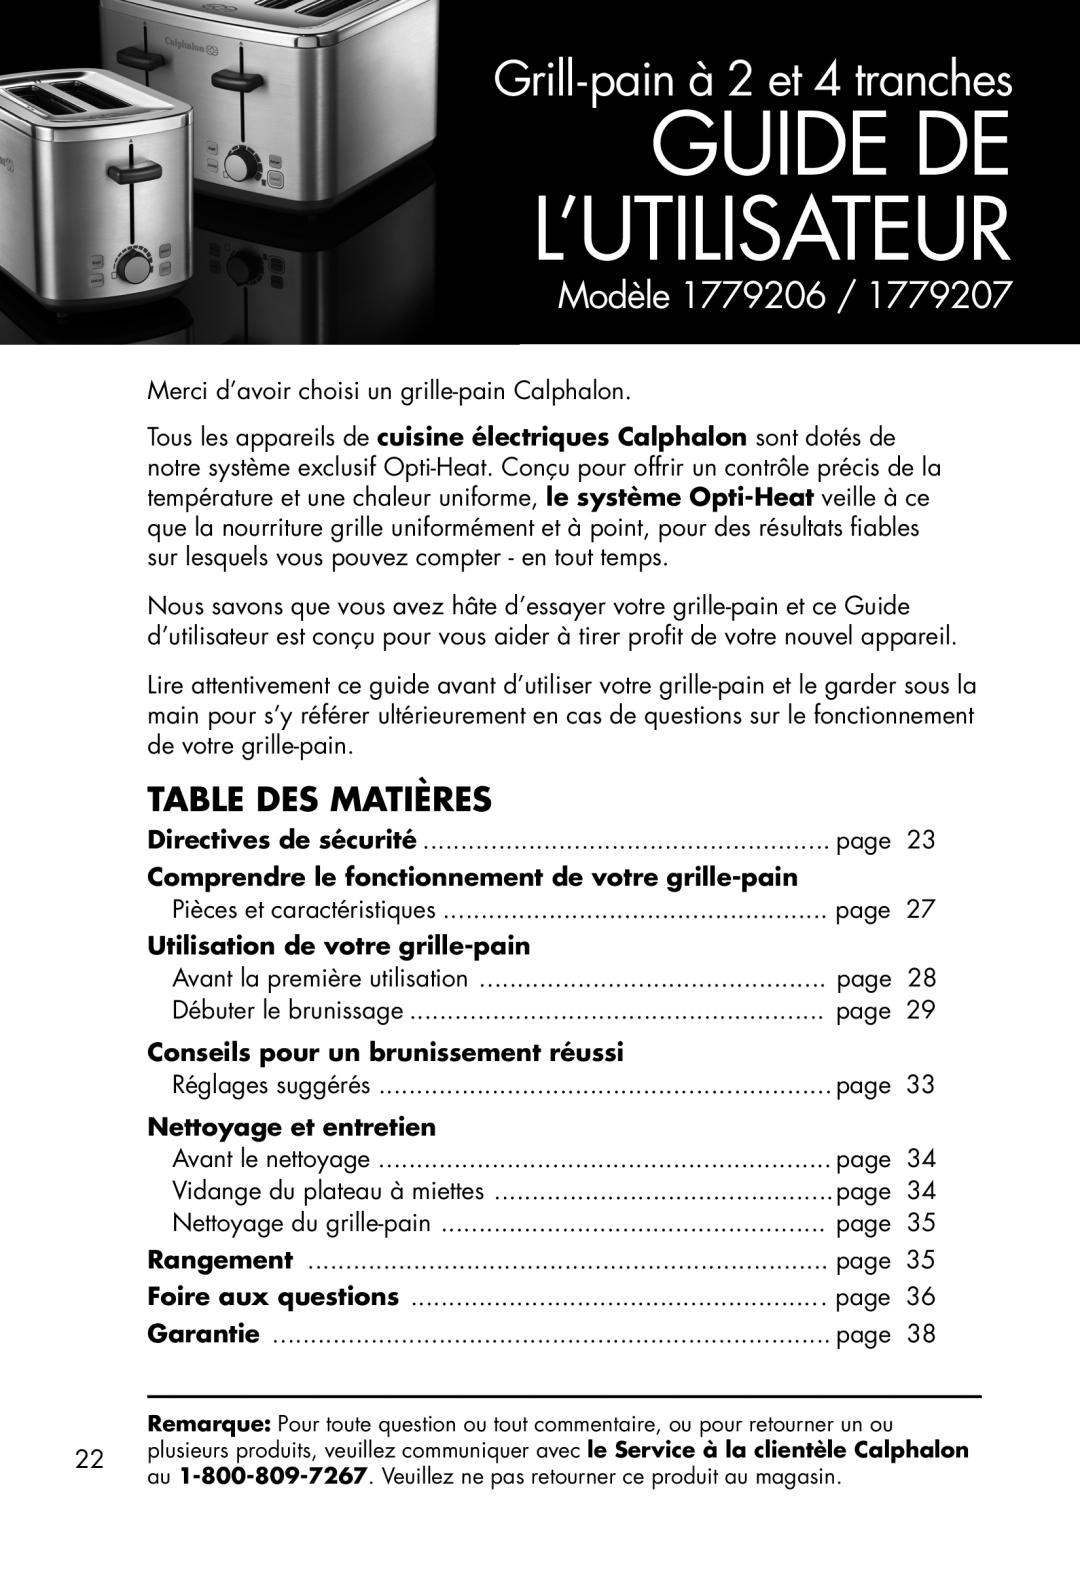 Calphalon 1779207 Table Des Matières, Guide De L’Utilisateur, Grill-painà 2 et 4 tranches, Modèle, Nettoyage et entretien 